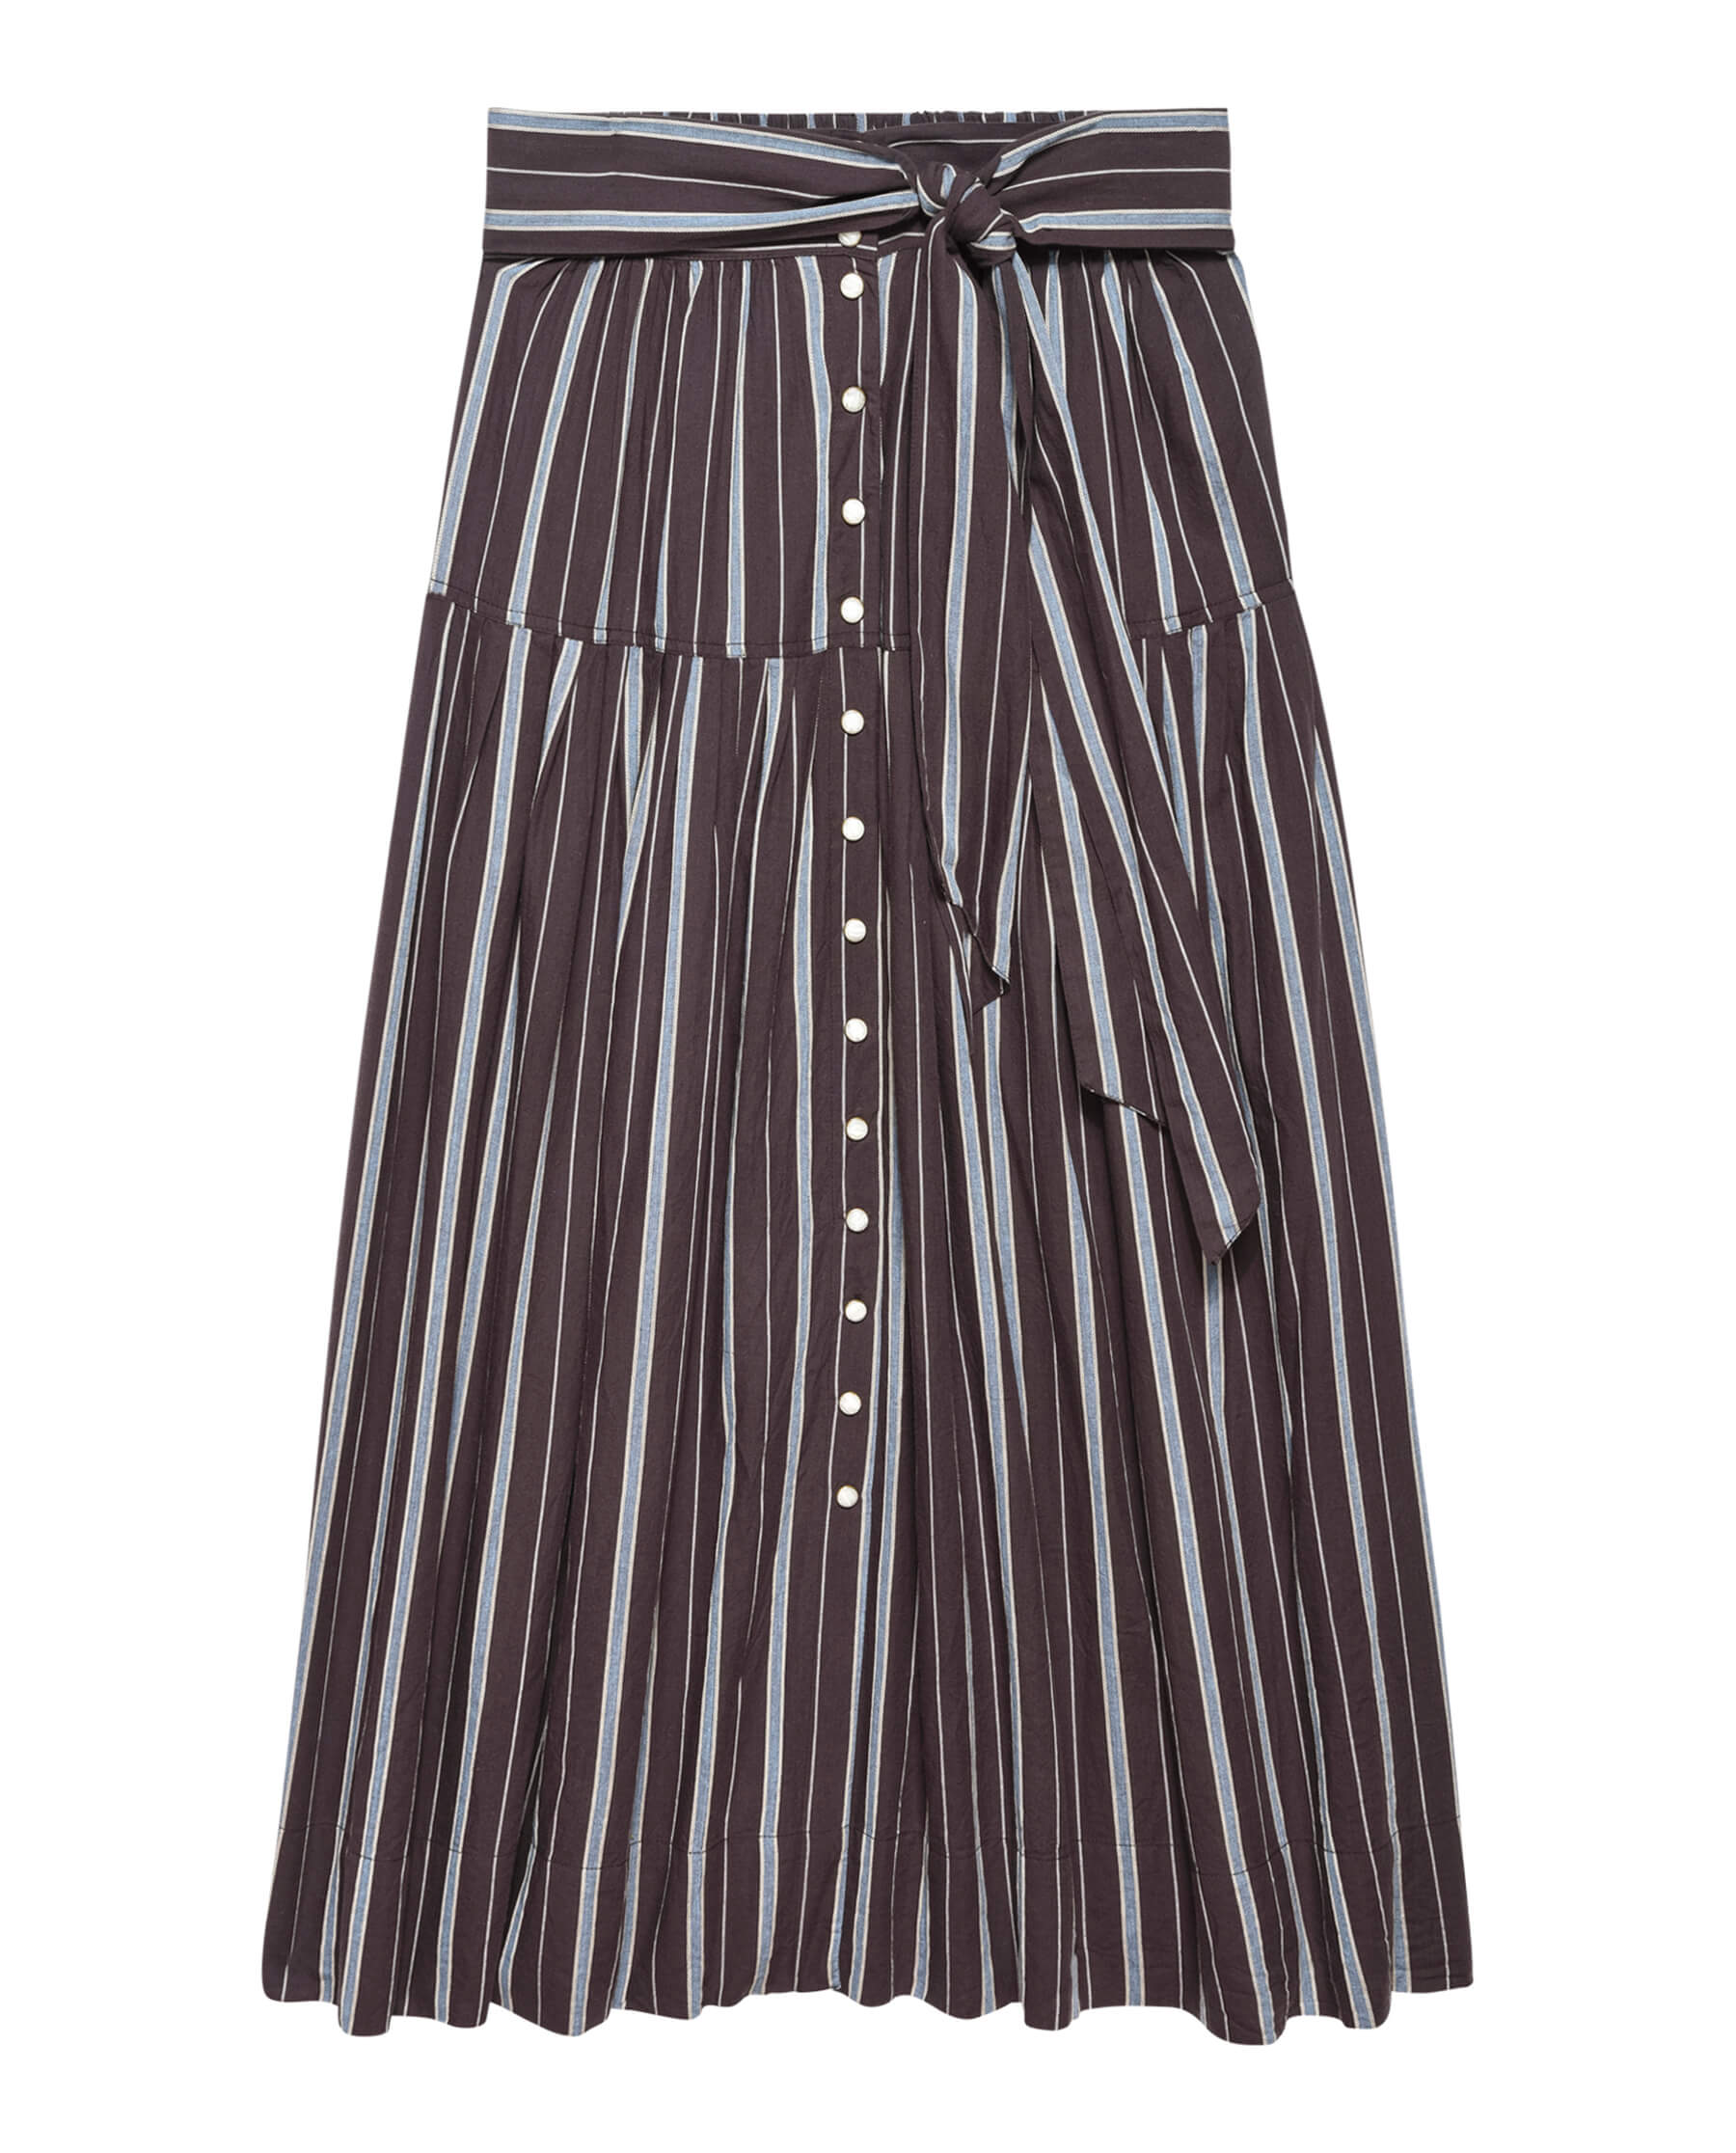 The Highland Skirt. -- Billiard Stripe